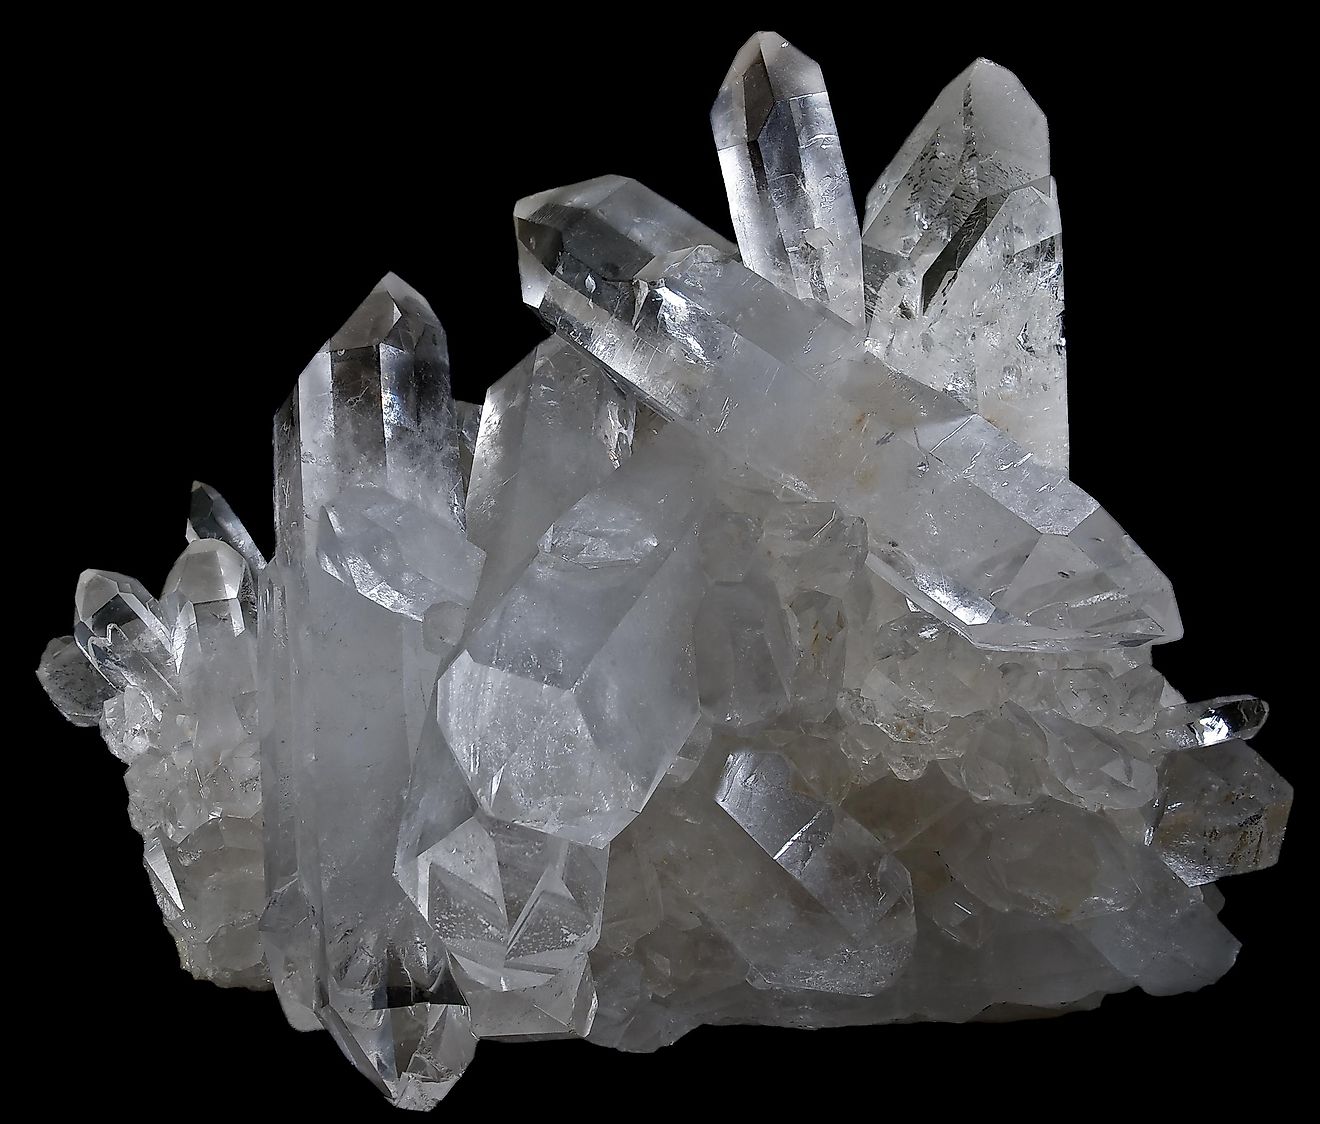 Cluster of natural quartz crystals